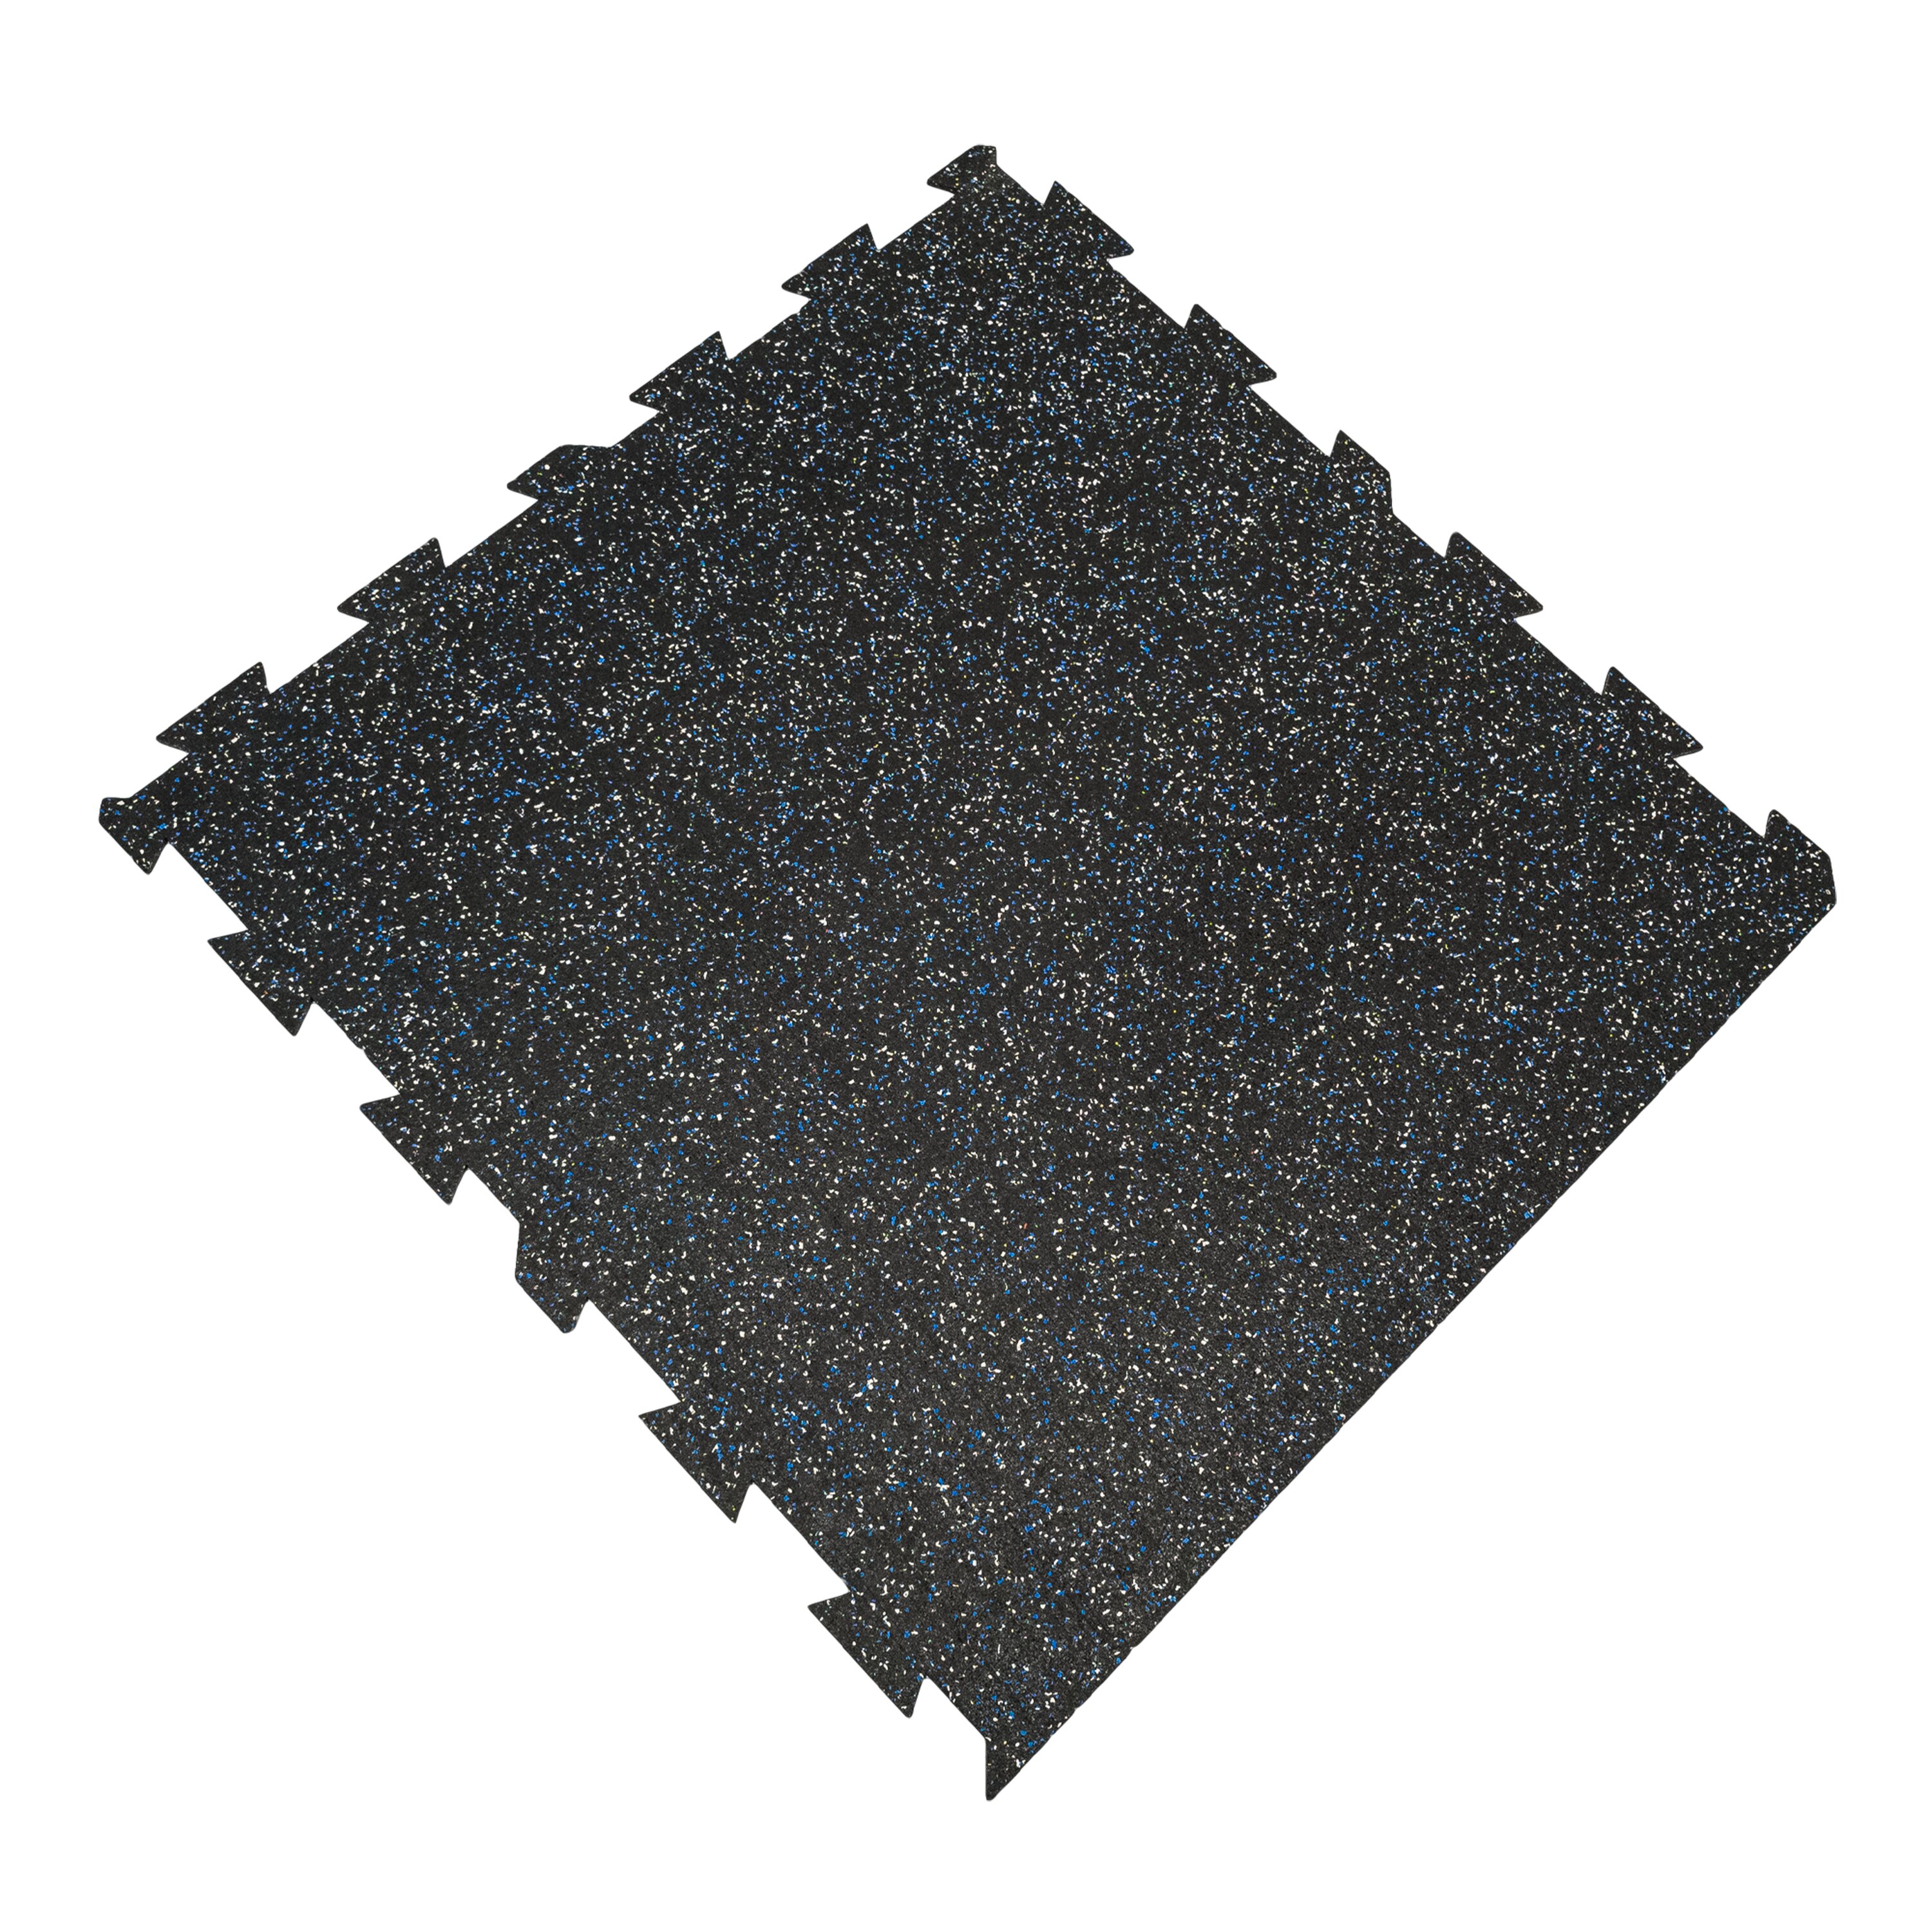 Čierno-bielo-modrá gumová modulová puzzle dlažba (okraj) FLOMA FitFlo SF1050 - dĺžka 100 cm, šírka 100 cm, výška 0,8 cm